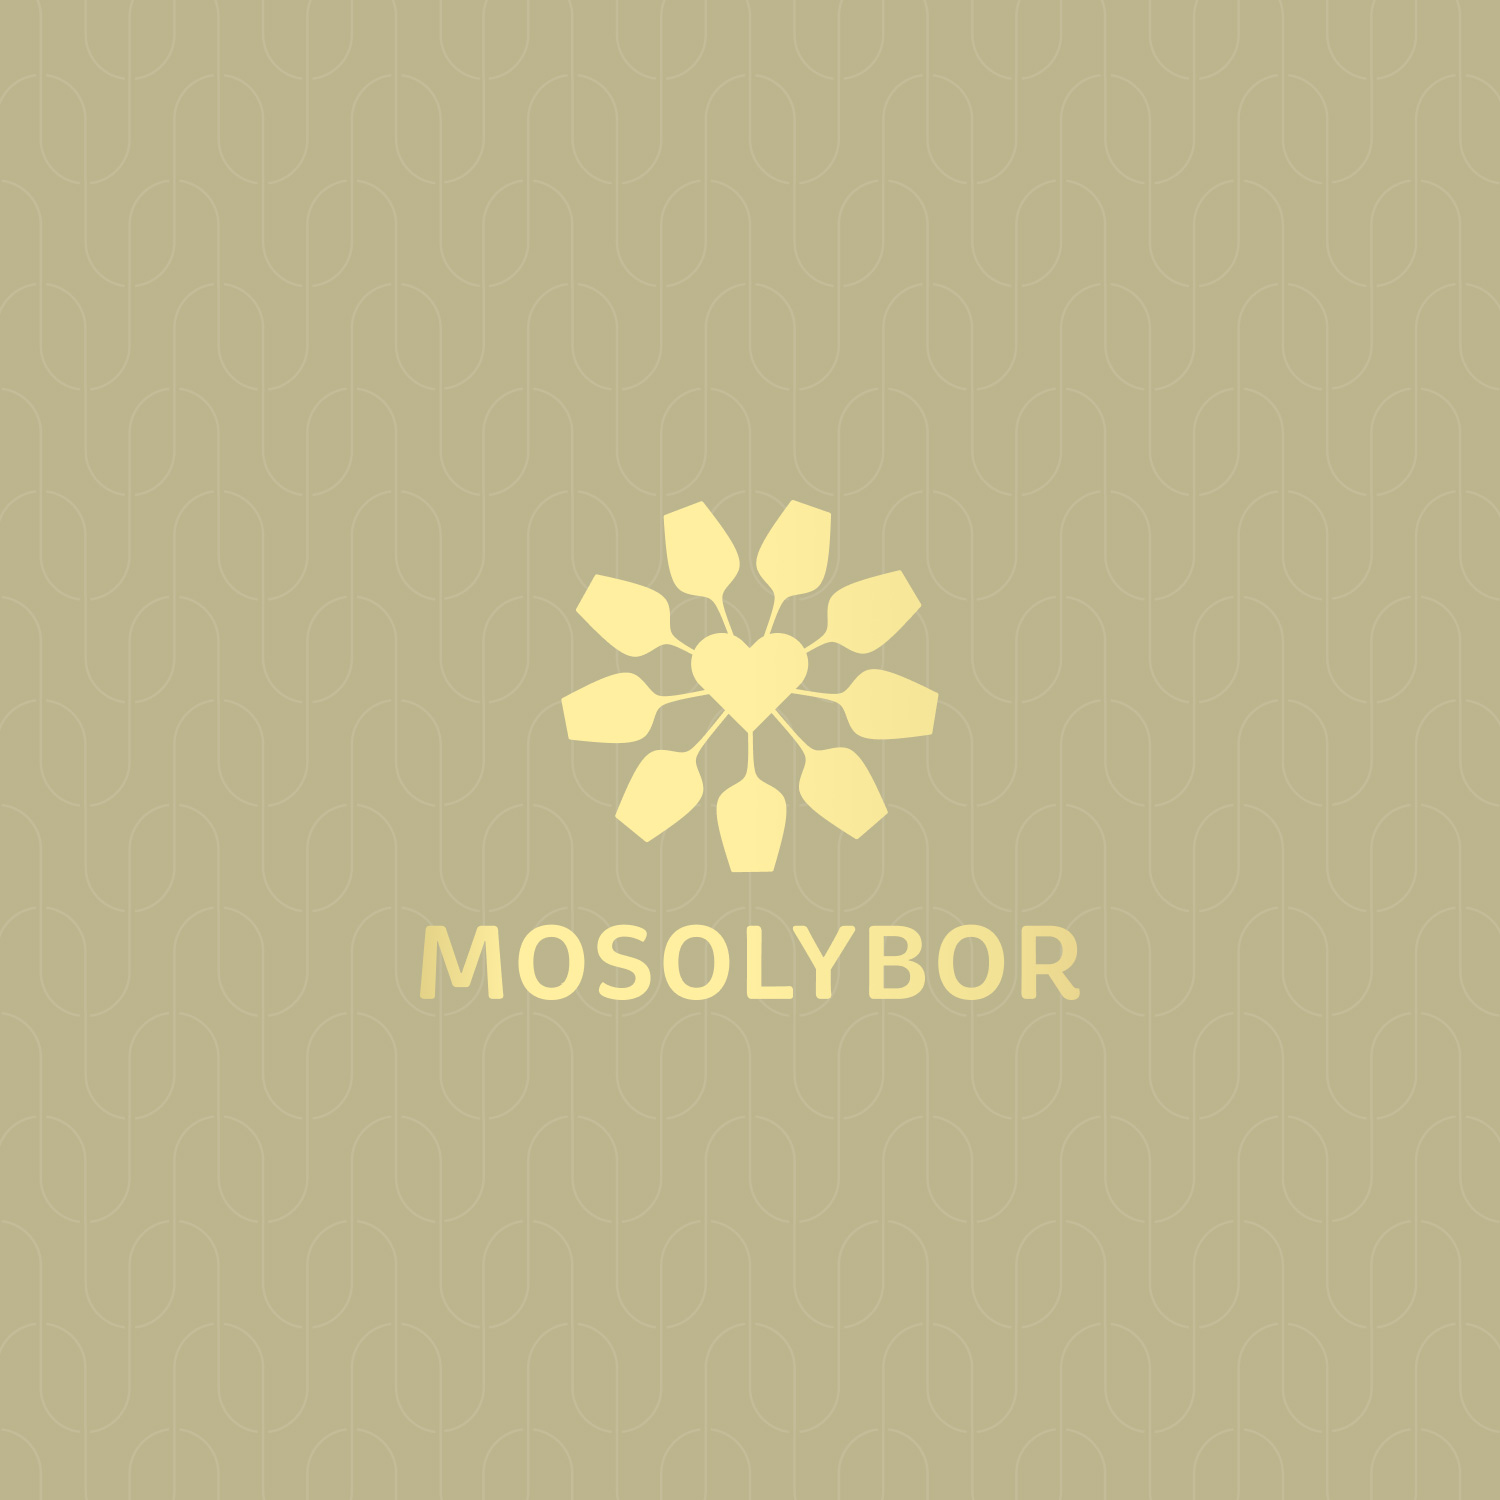 Mosolybor brand logó arculat tervezés